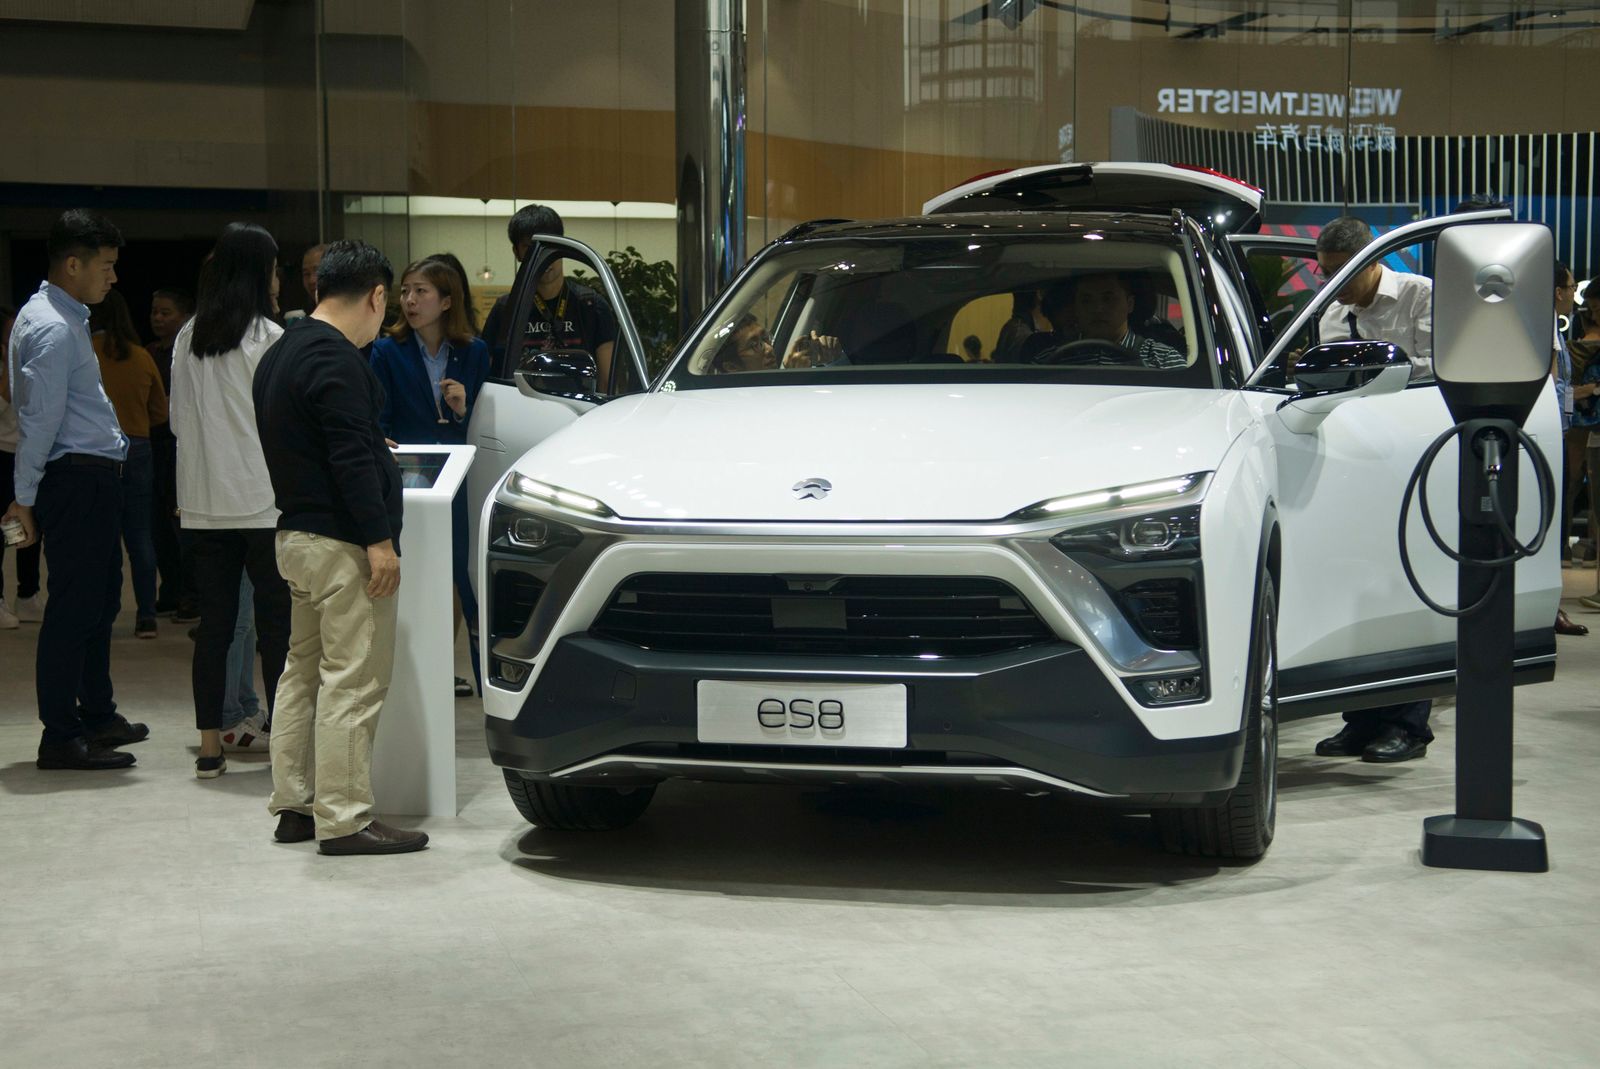 Chuyện khó tin: Hãng xe Trung Quốc thua kiện vì đặt tên sản phẩm na ná Audi - Ảnh 1.